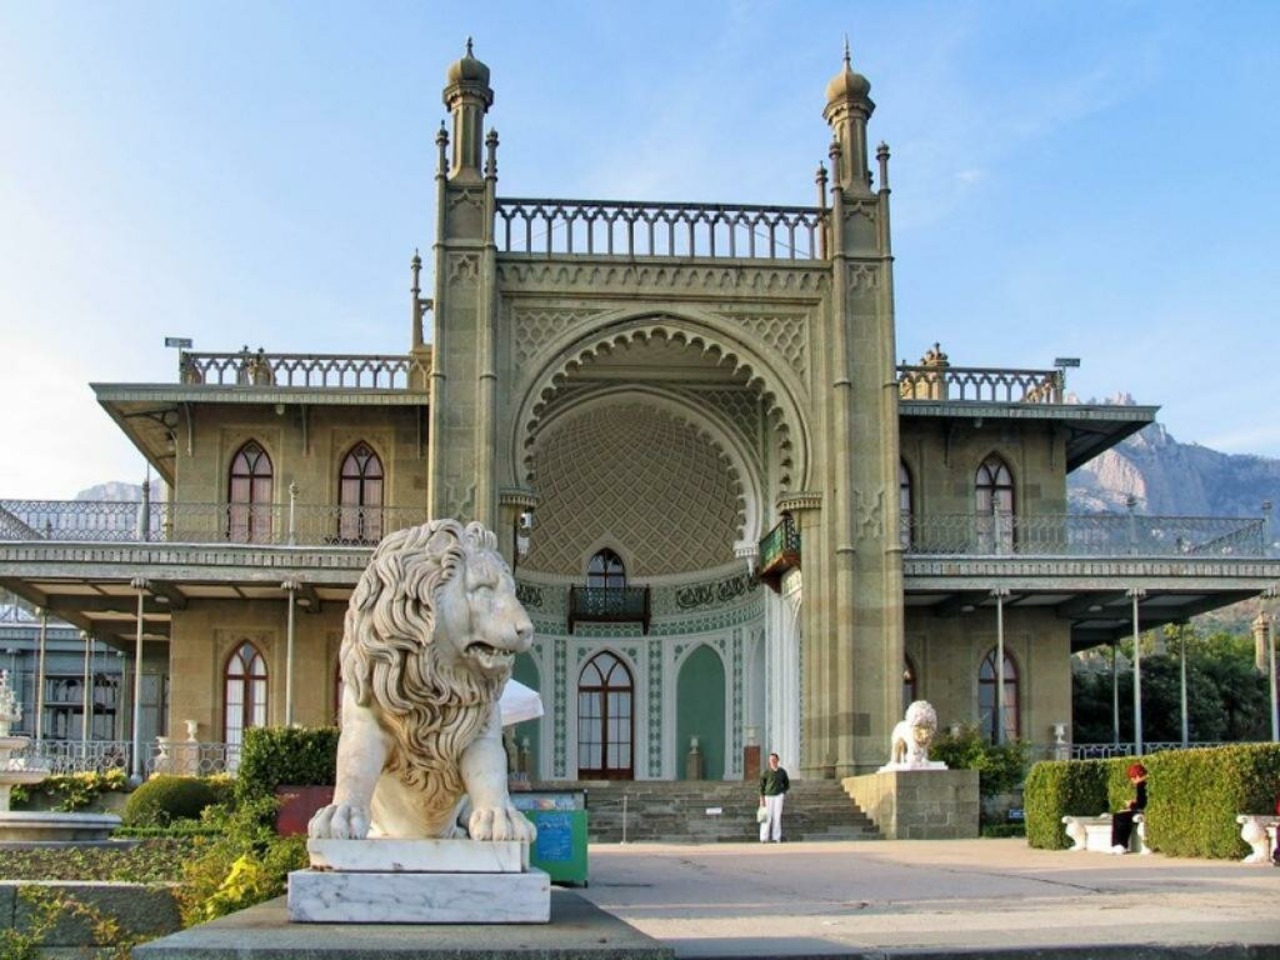 Воронцовский дворец с парком + Ай-Петри из Ялты | Цена 20300₽, отзывы, описание экскурсии